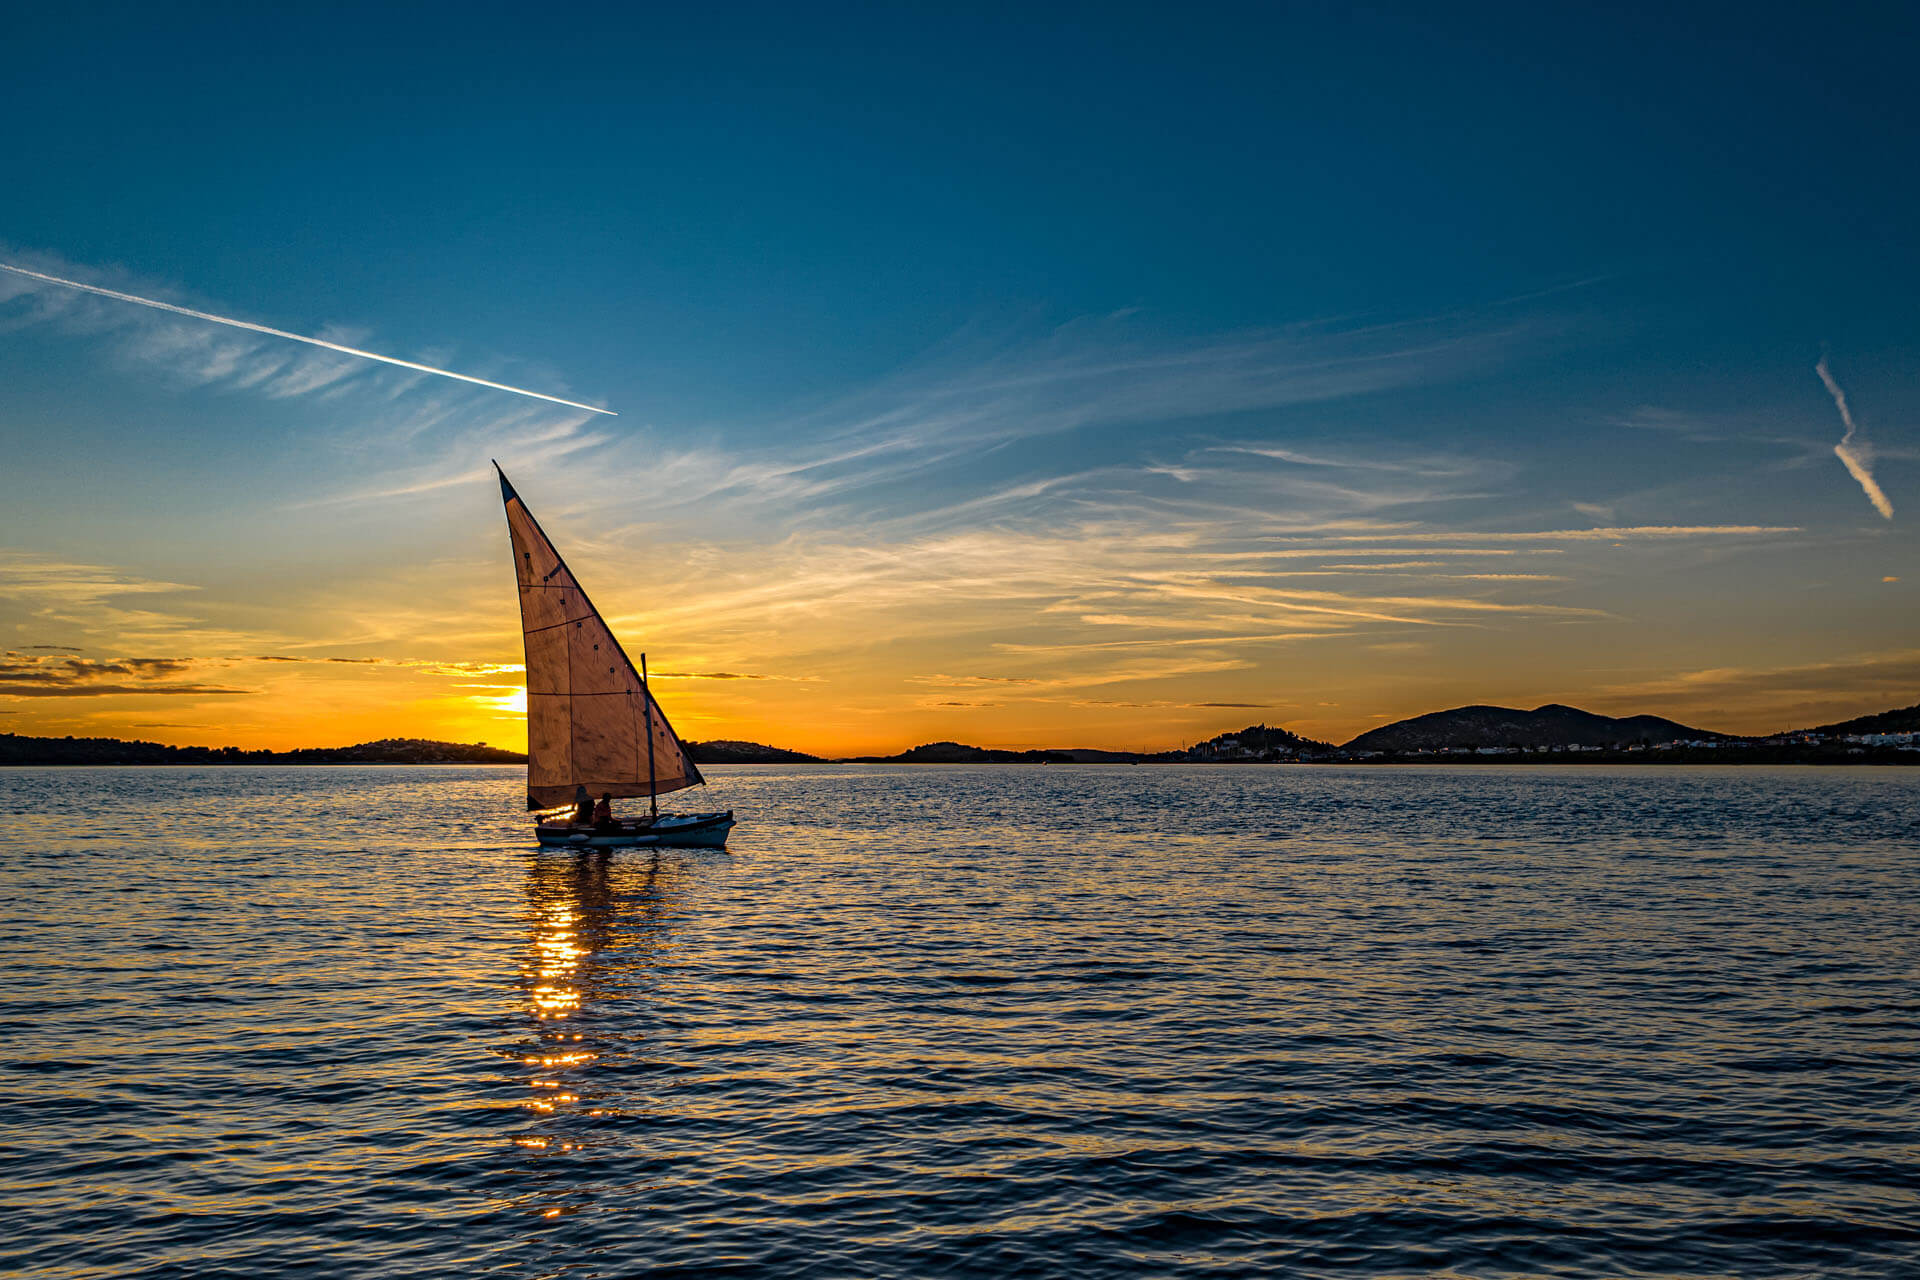 2019/09/24 - Sailing boat at sunset 2